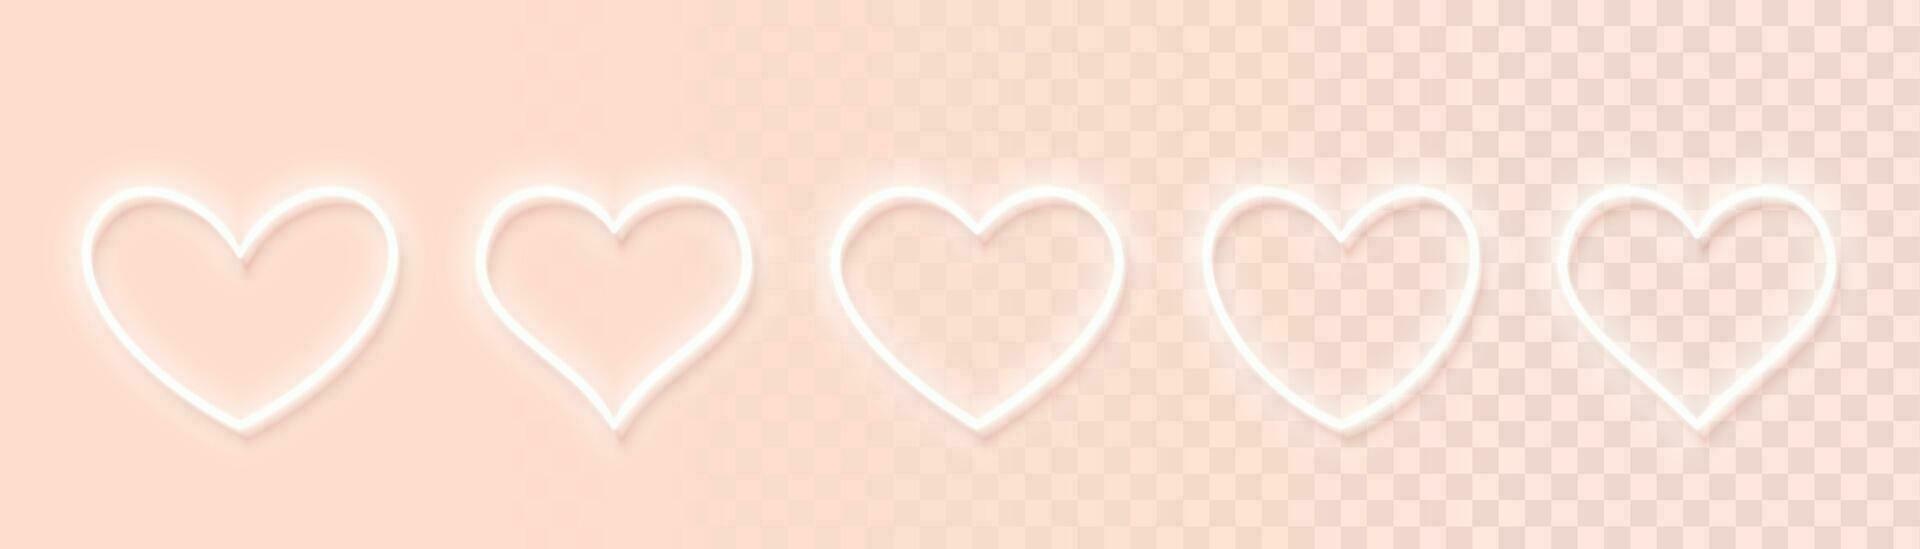 reeks van wit neon gloeiend hart pictogrammen van verschillend vormen voor licht achtergronden. ontwerp elementen voor Valentijnsdag dag. minimaal stijl. vector illustratie